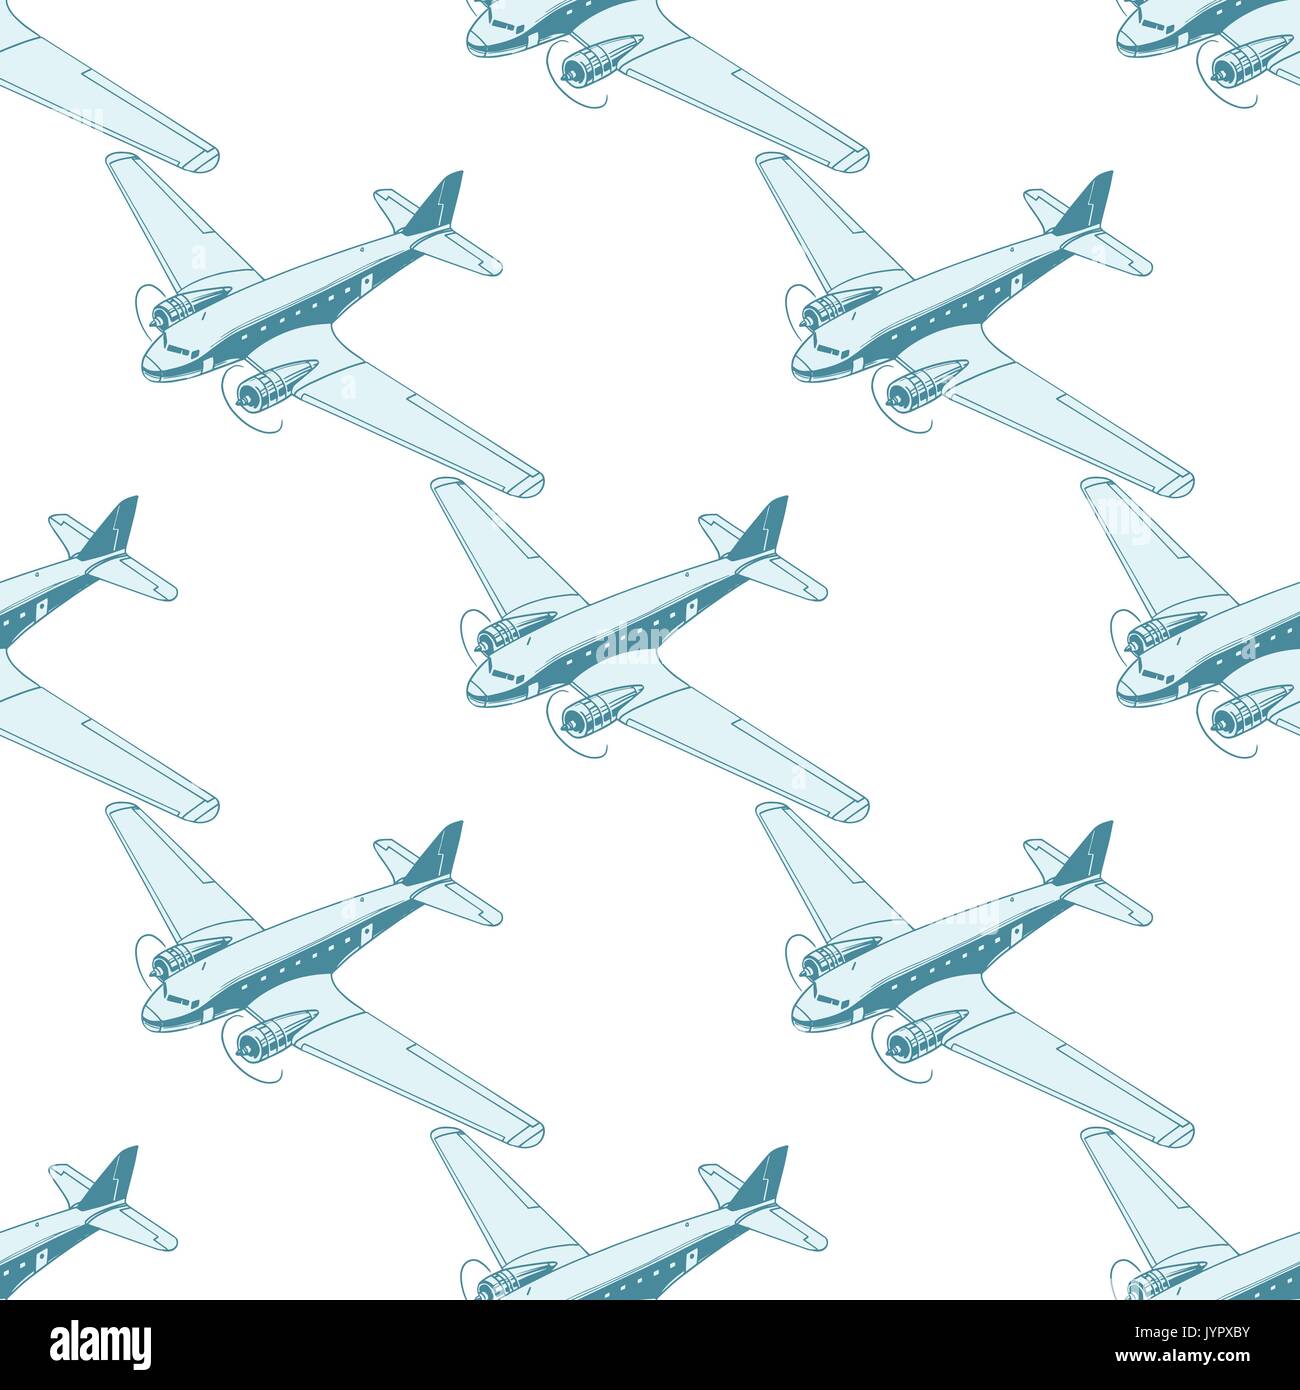 L'aviation d'aéronefs de transport aérien avion modèle homogène isolé sur fond blanc. Aviation avion tourisme voyage transport aérien. Pop Art Illustration de Vecteur